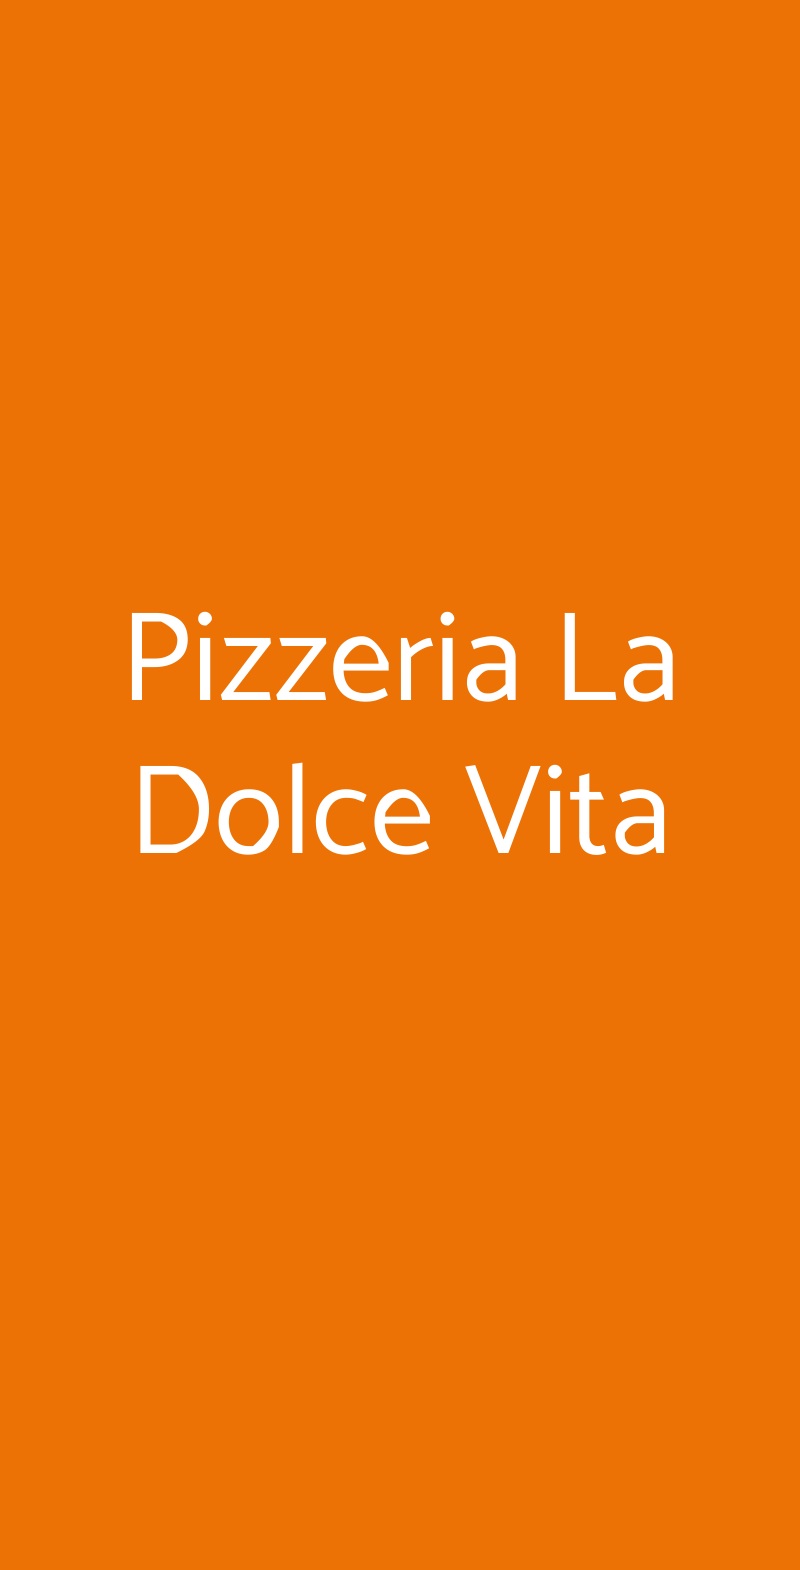 Pizzeria La Dolce Vita Roma menù 1 pagina